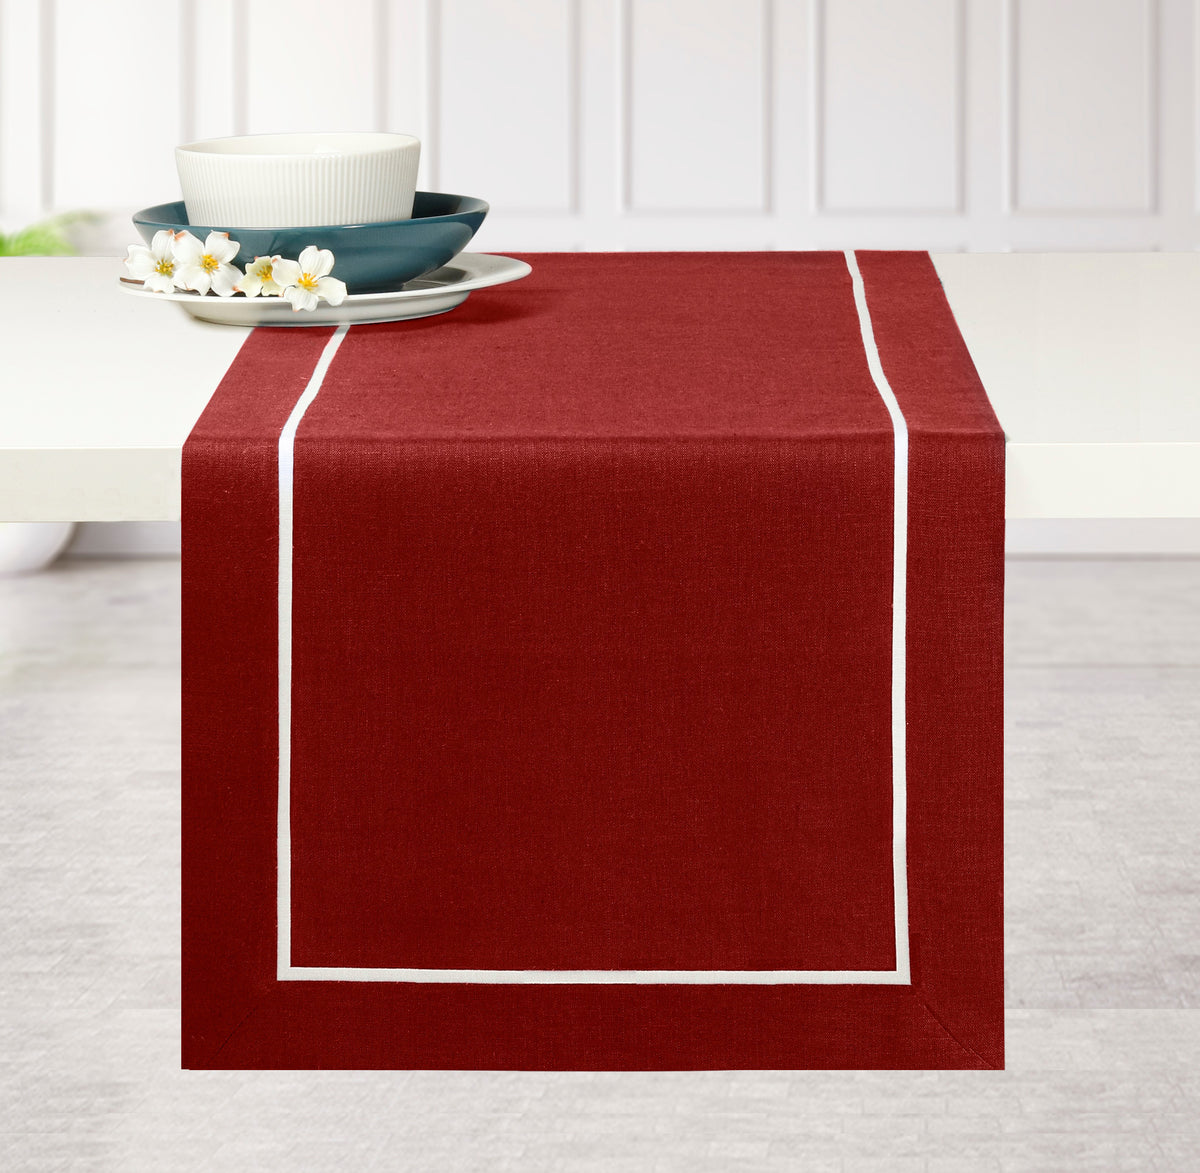 Red & White Linen Table Runner - Reversible